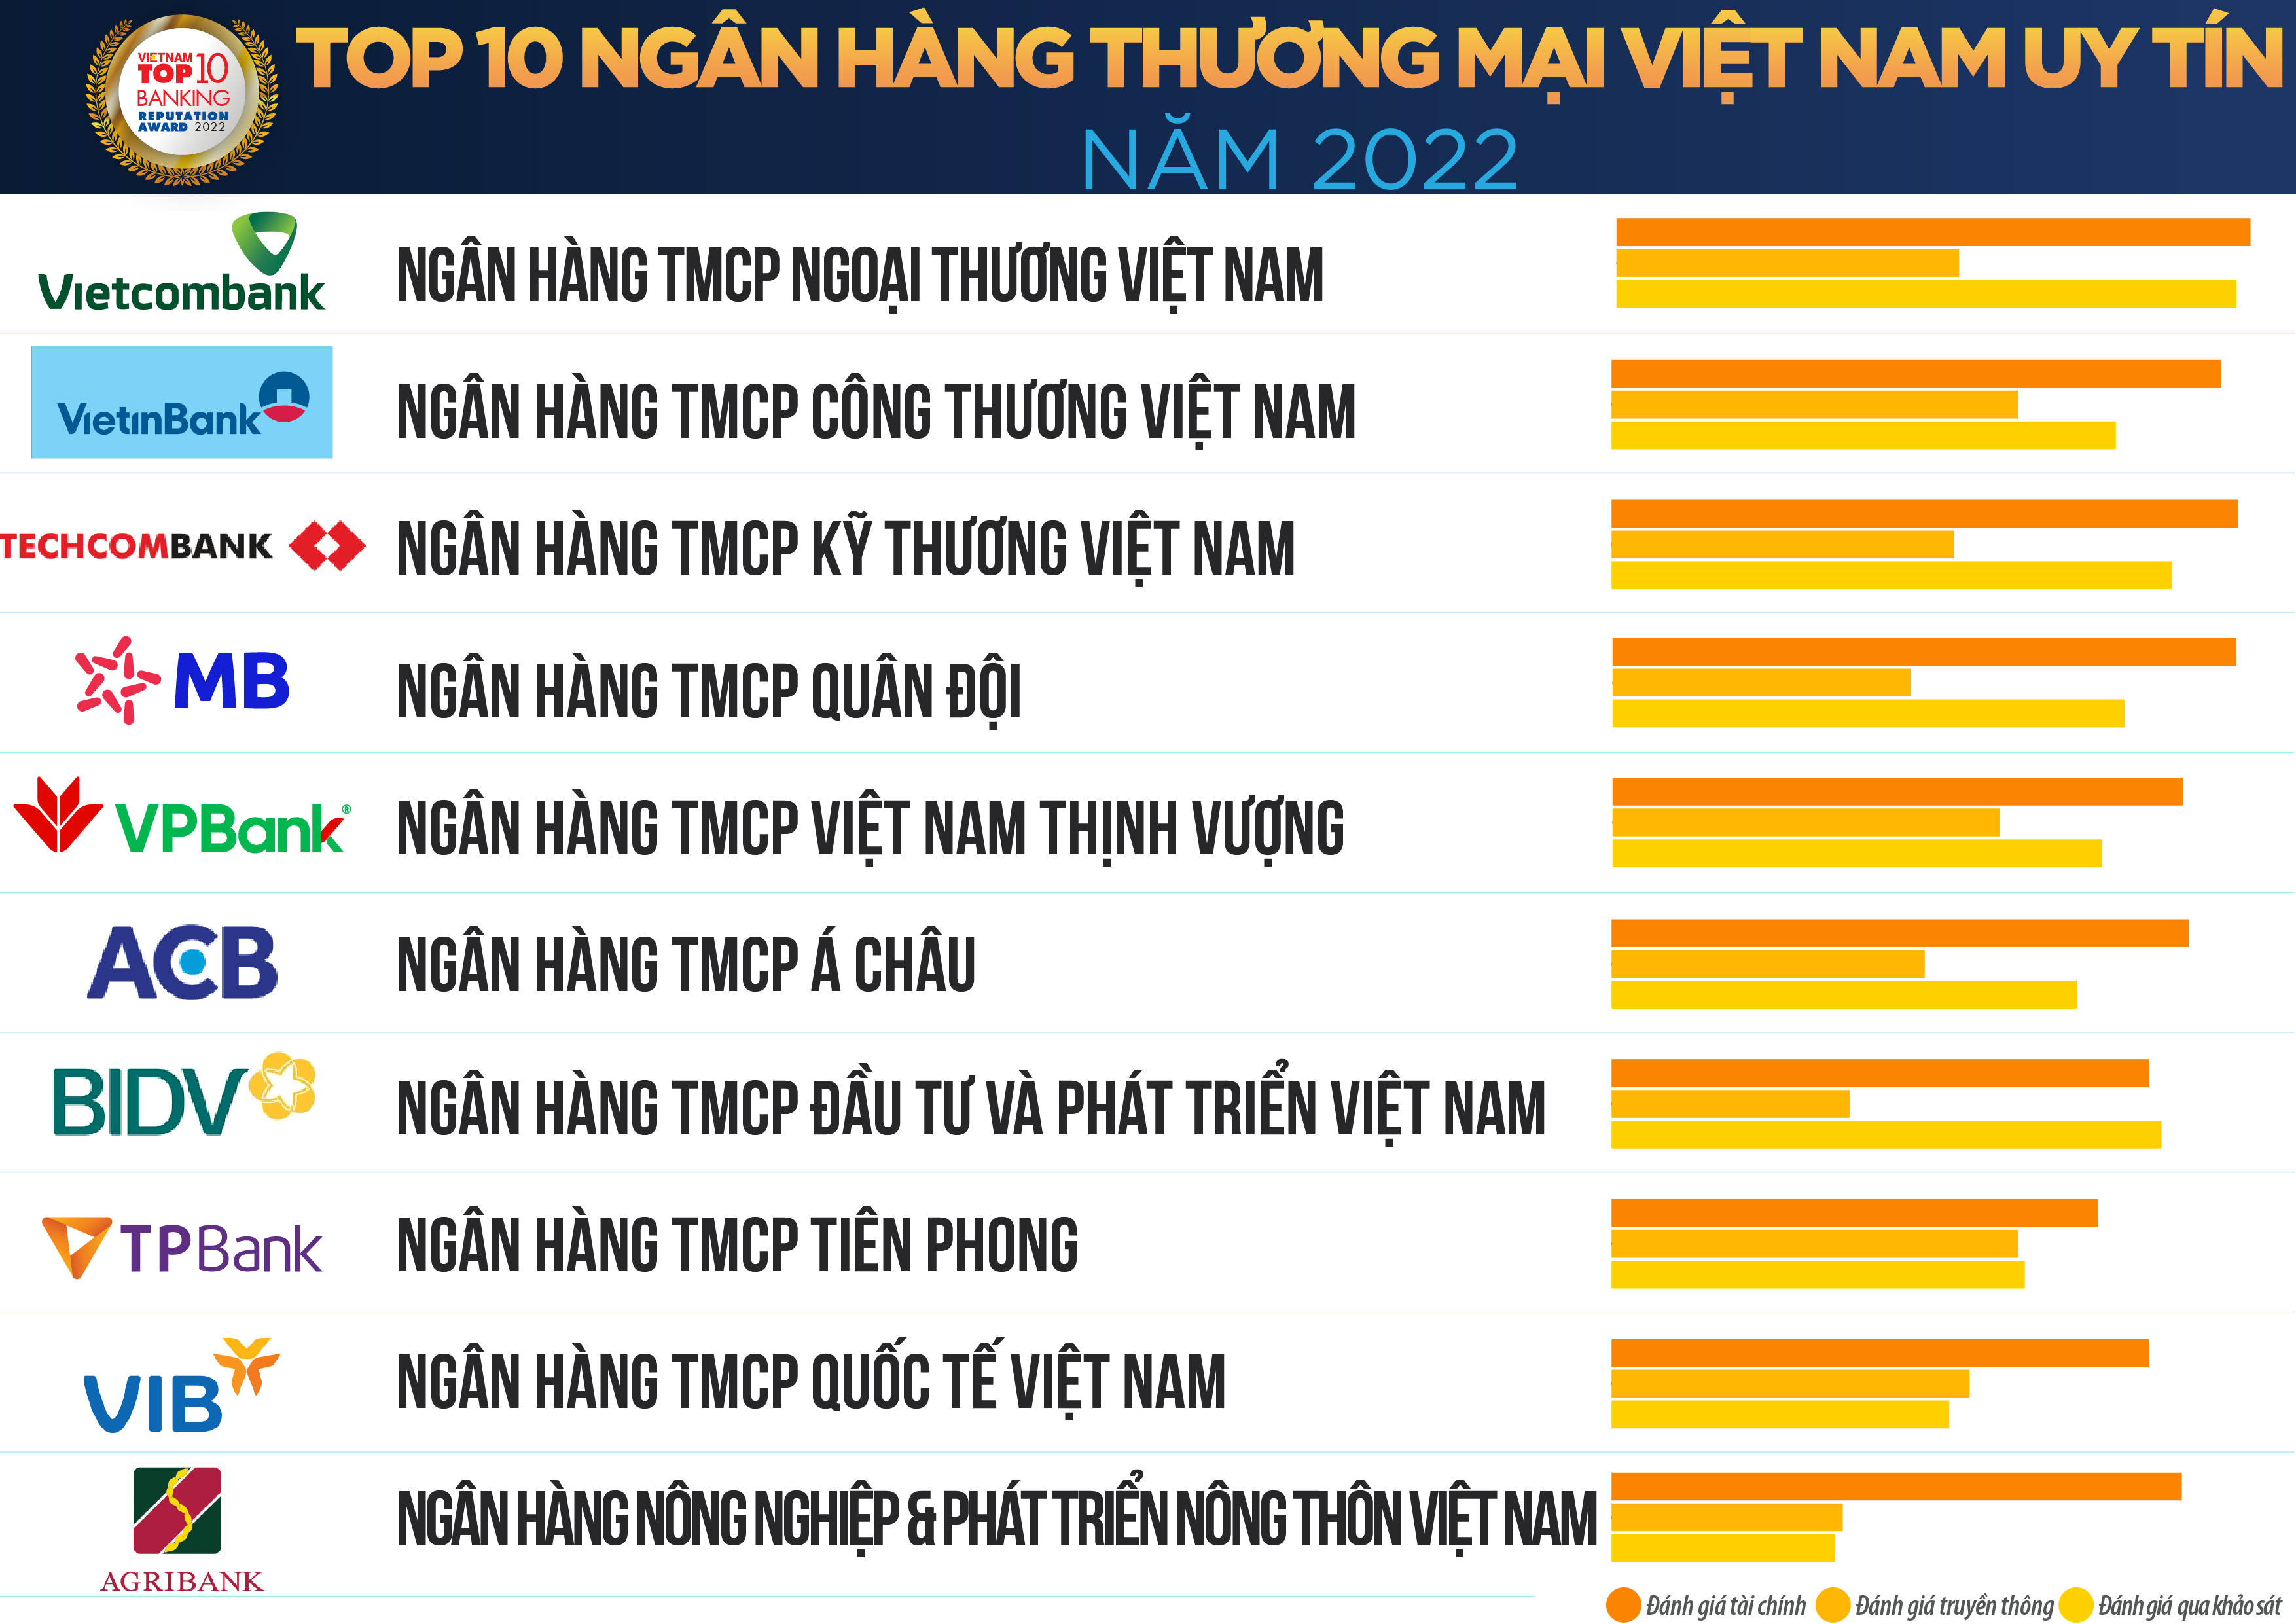 Thái Lan Nghiên cứu mô hình ngân hàng Phật giáo  Chùa Bửu Châu  Giáo Hội  Phật Giáo Việt Nam